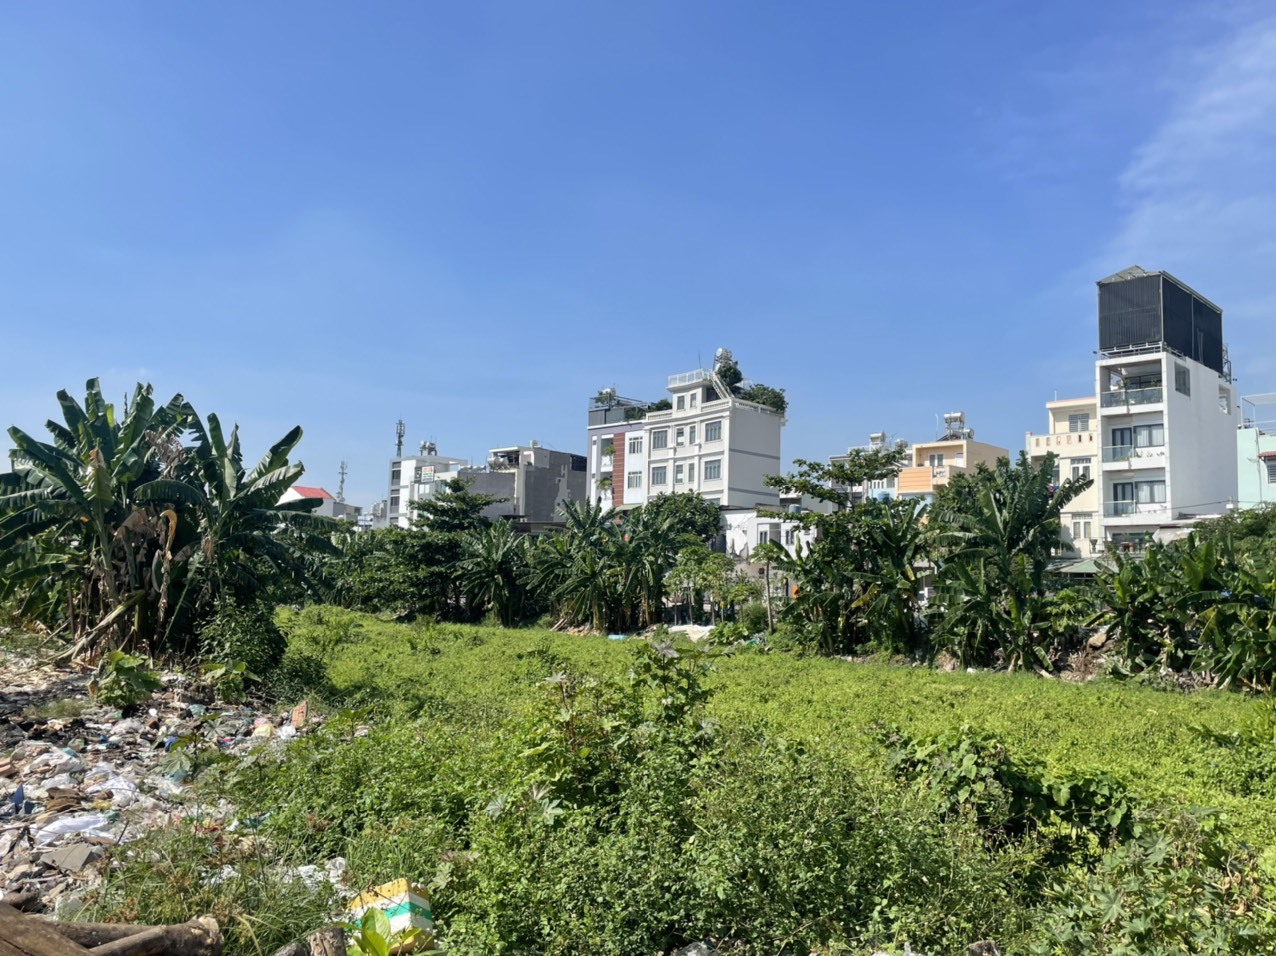 Nhiều khu vực kênh Tham Lương bị xả rác gây ô nhiễm môi trường.